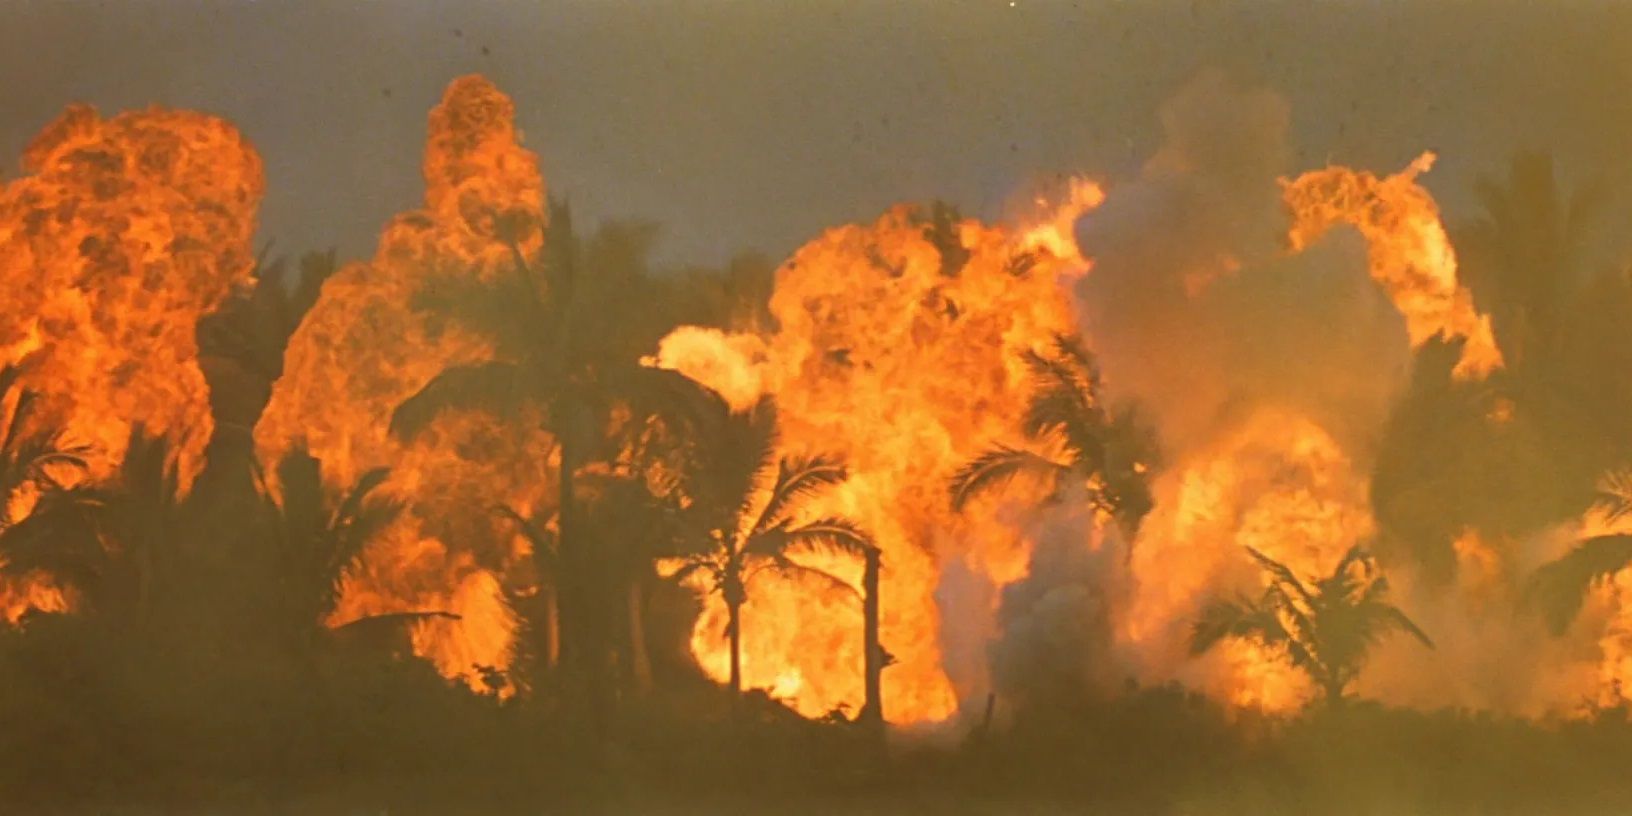 Apocalypse Now: Final Cut': Coppola's Surreal Vietnam Epic Returns